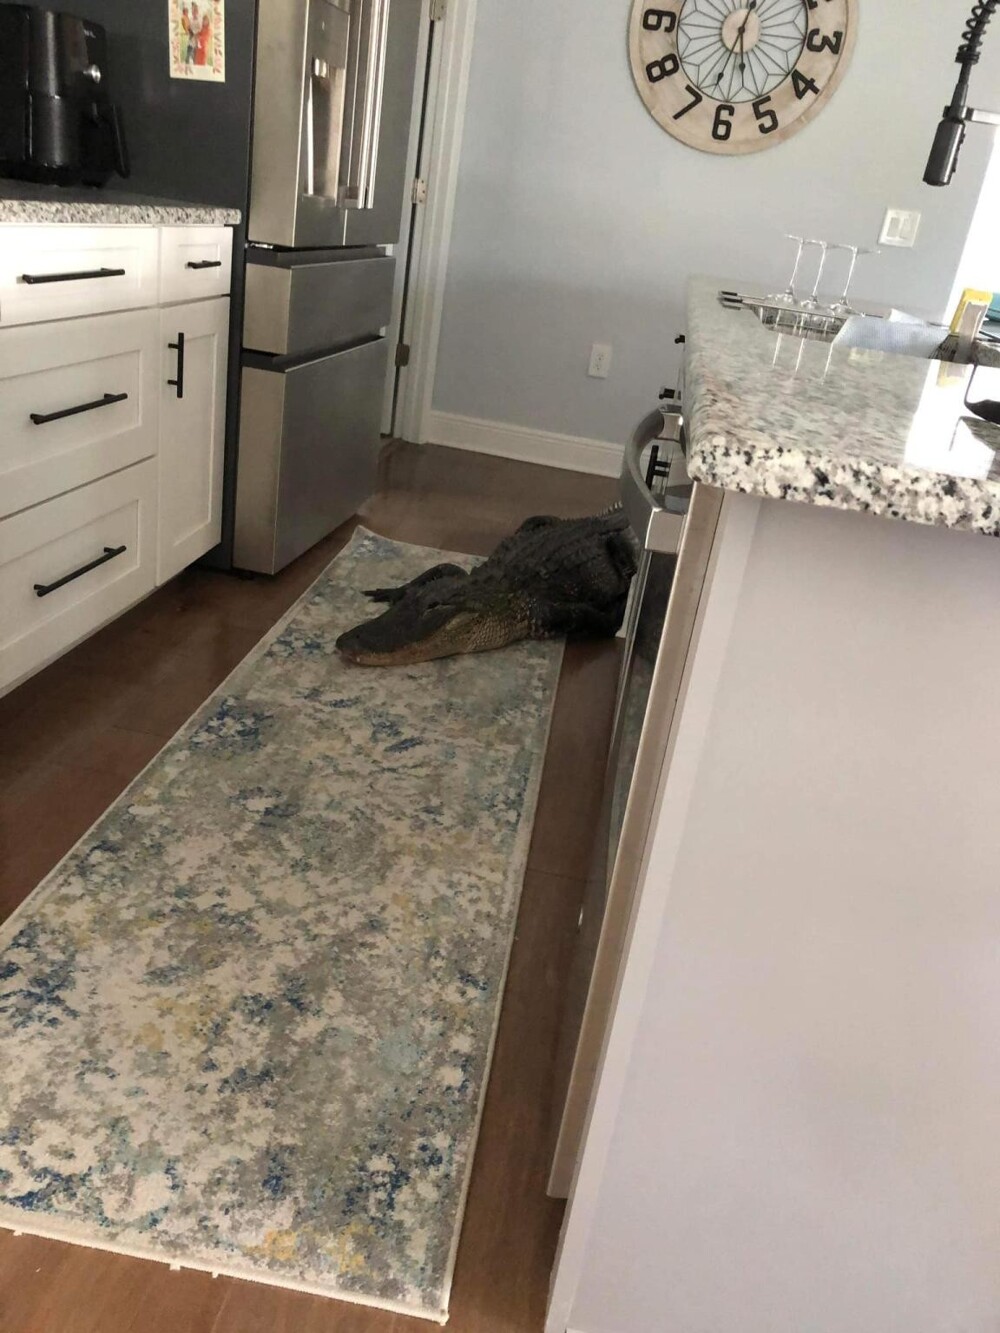 Жительница Флориды обнаружила на кухне 2,5-метрового аллигатора